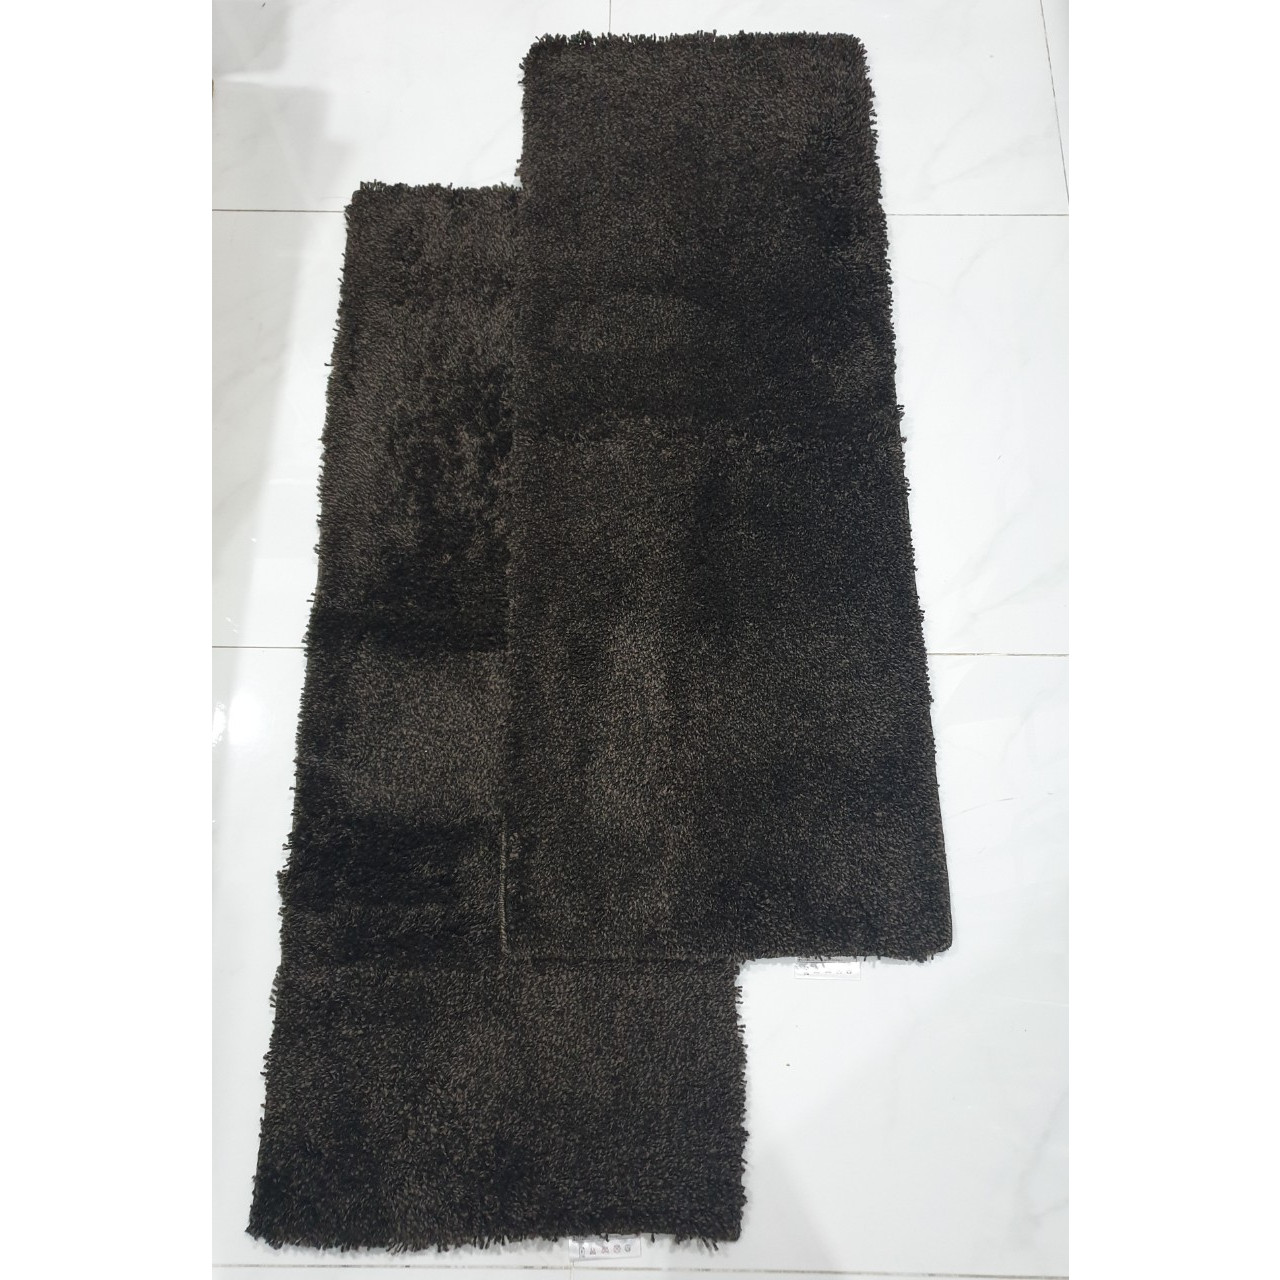 Bộ 2 thảm bếp chống trượt cao cấp sợi thảm dài kích thước 0.45mx1.2m- Màu nâu đậm - CONDOR